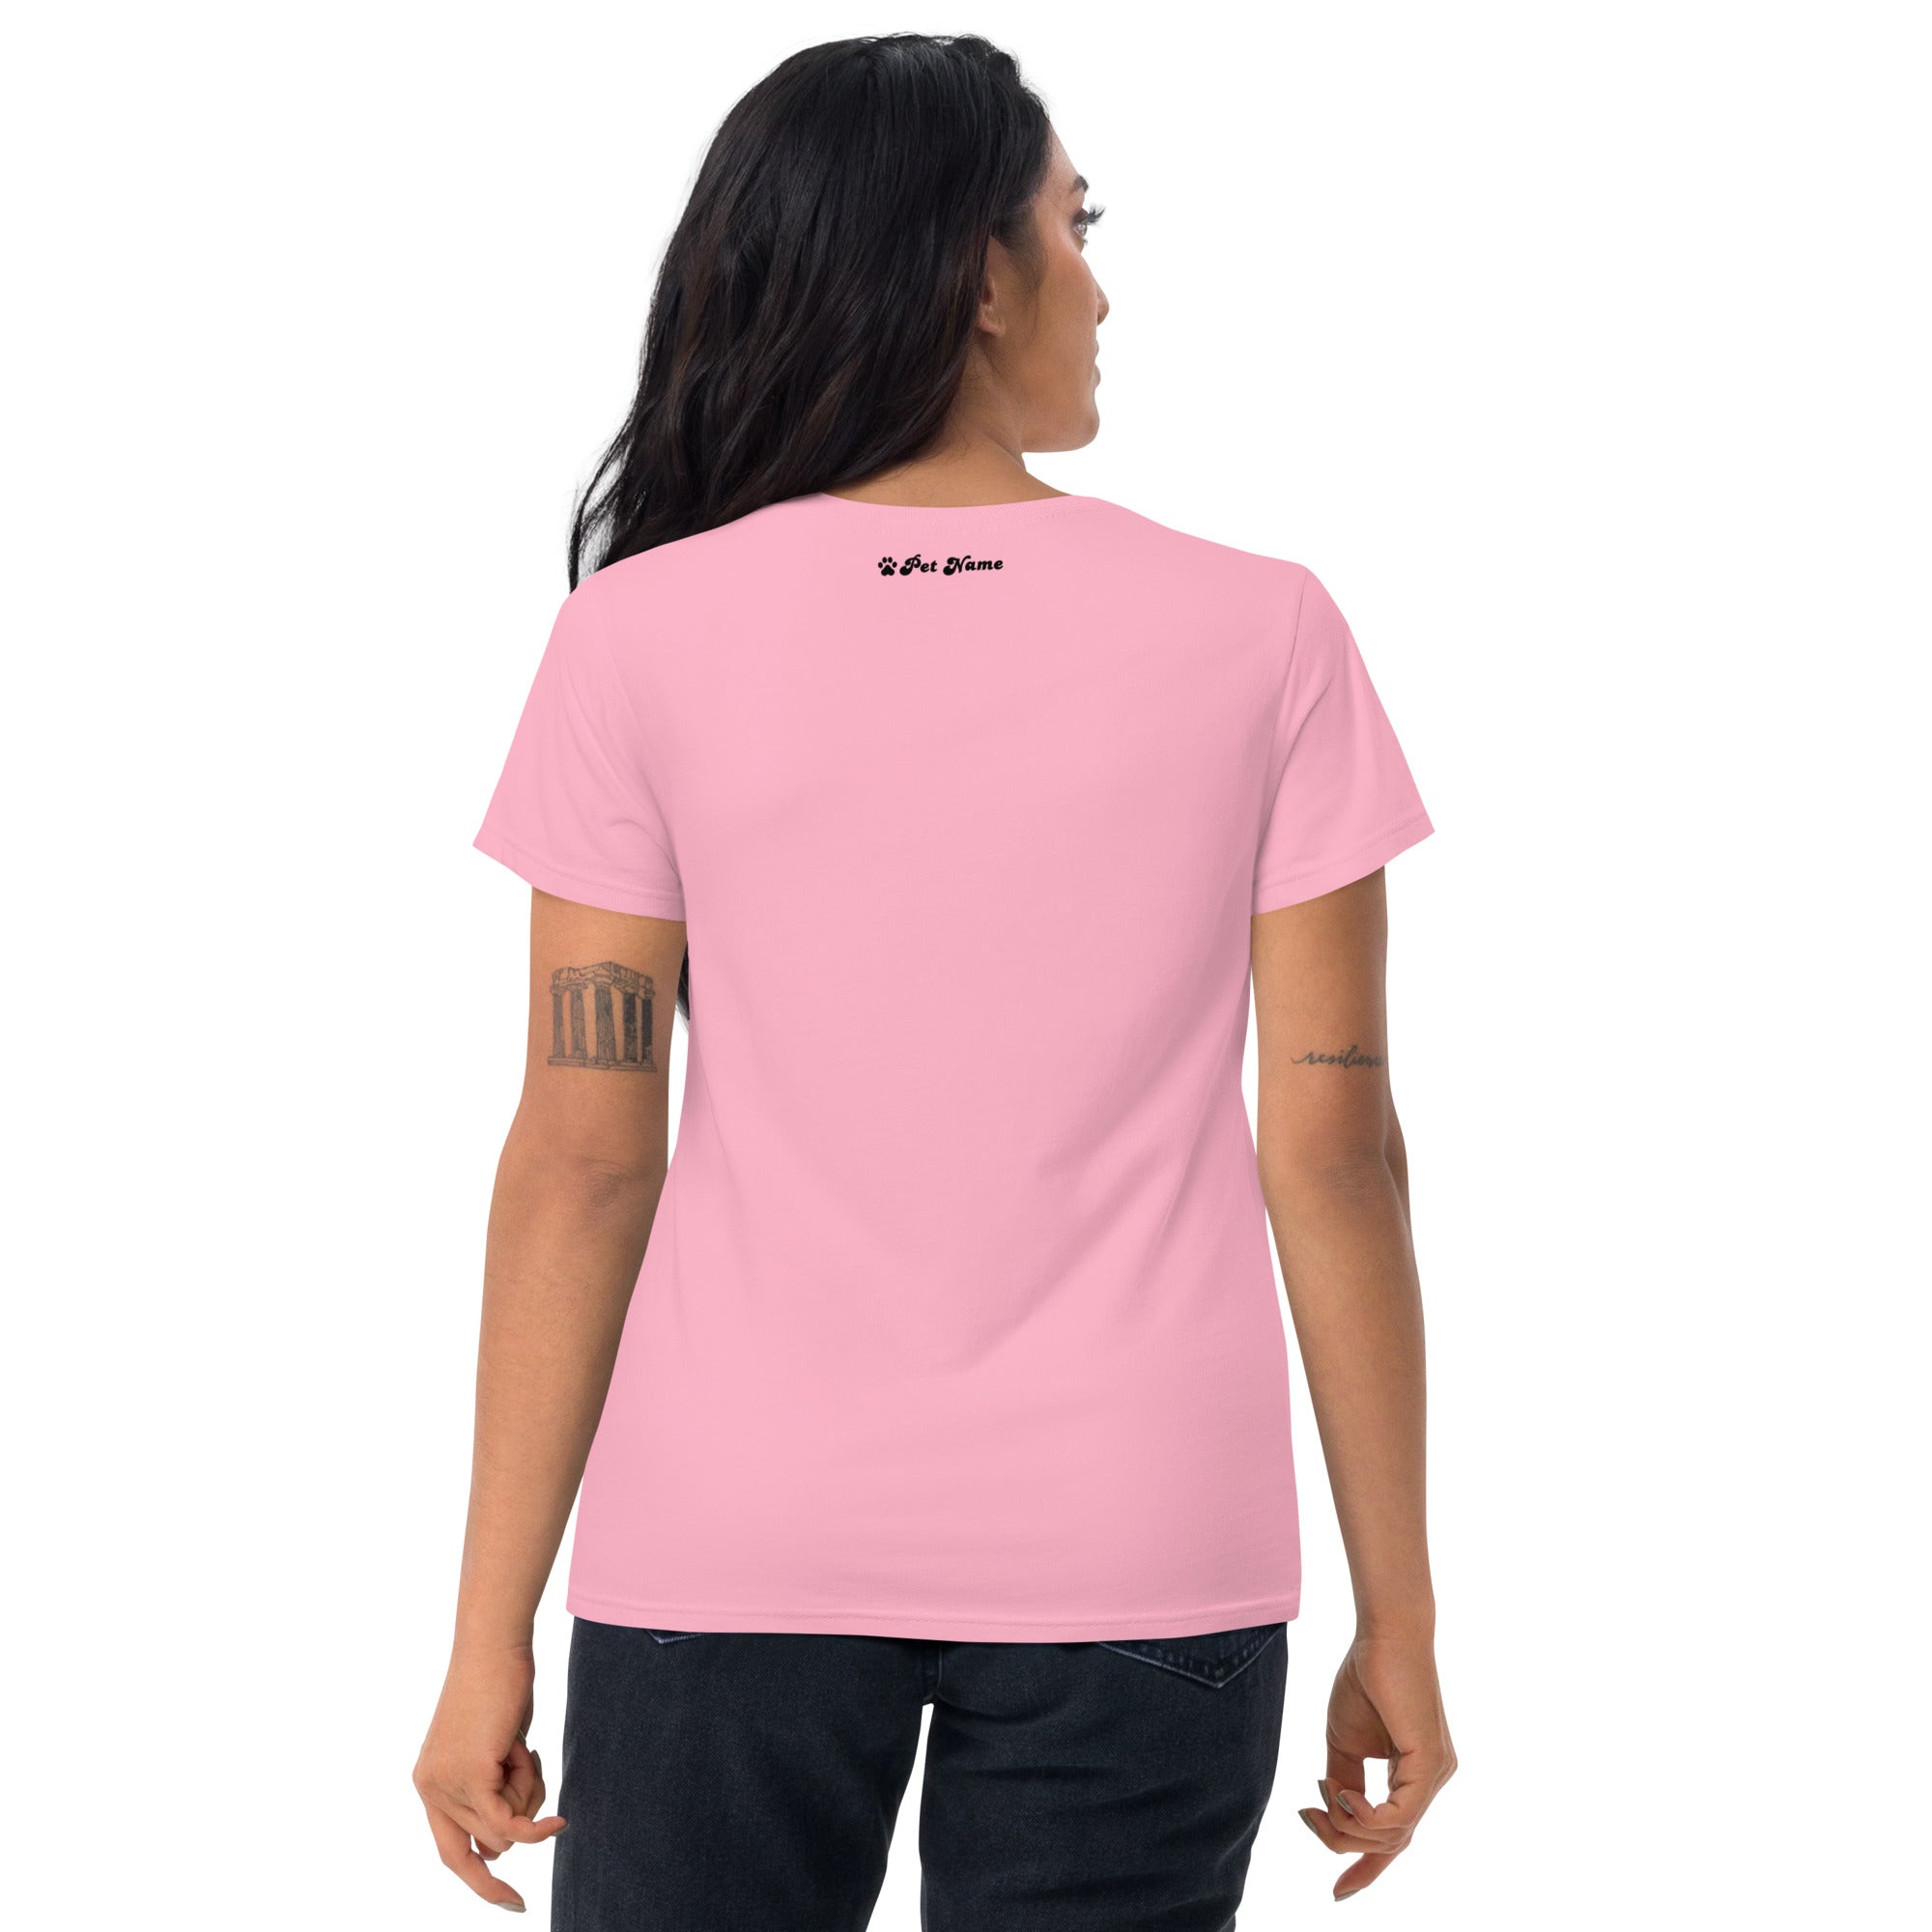 Golden Retriever Women's short sleeve t-shirt